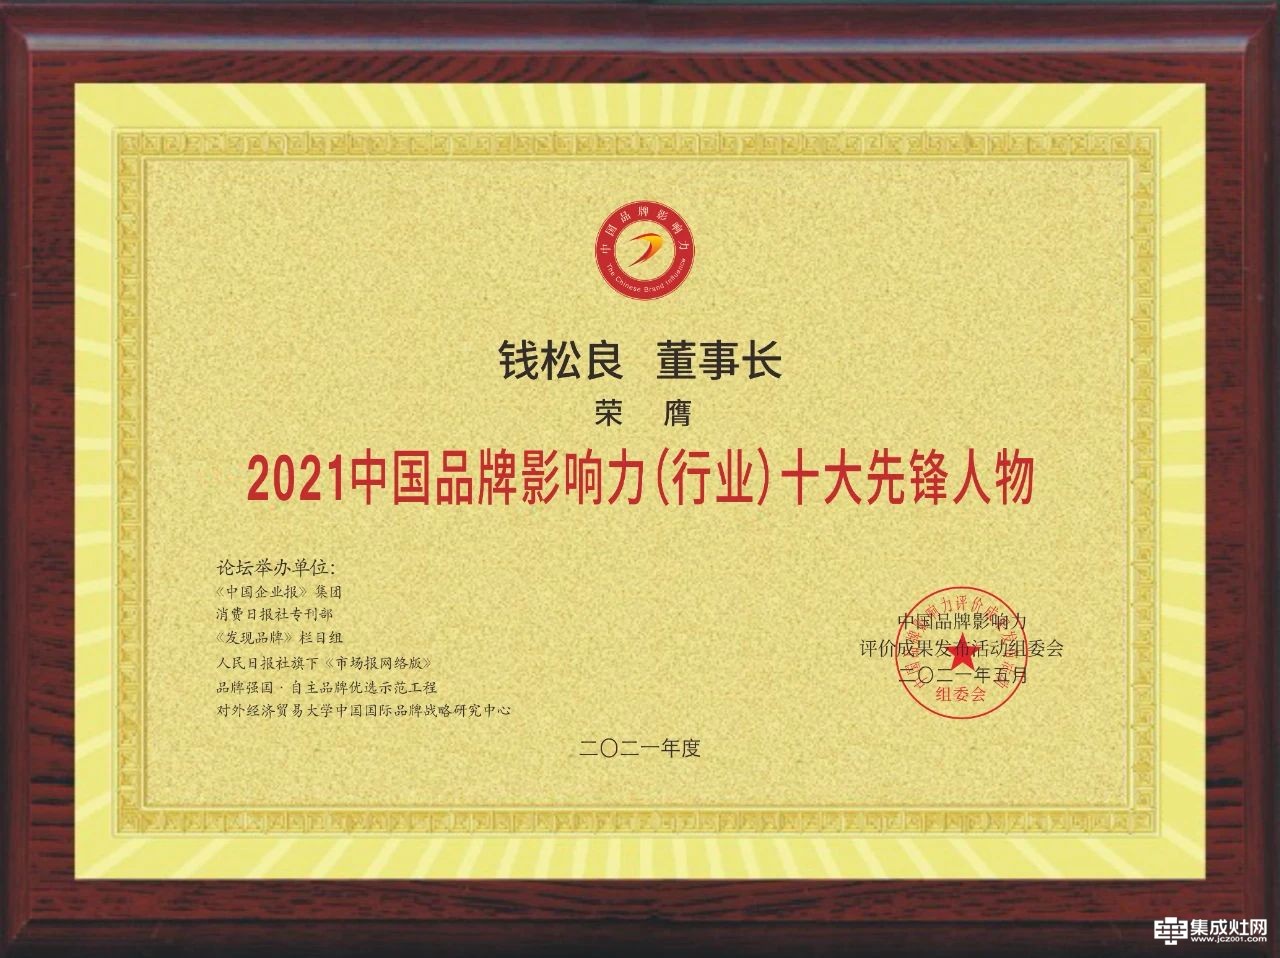 睿敏志远 蓝炬星电器董事长钱松良荣膺2021中国品牌影响力十大先锋人物